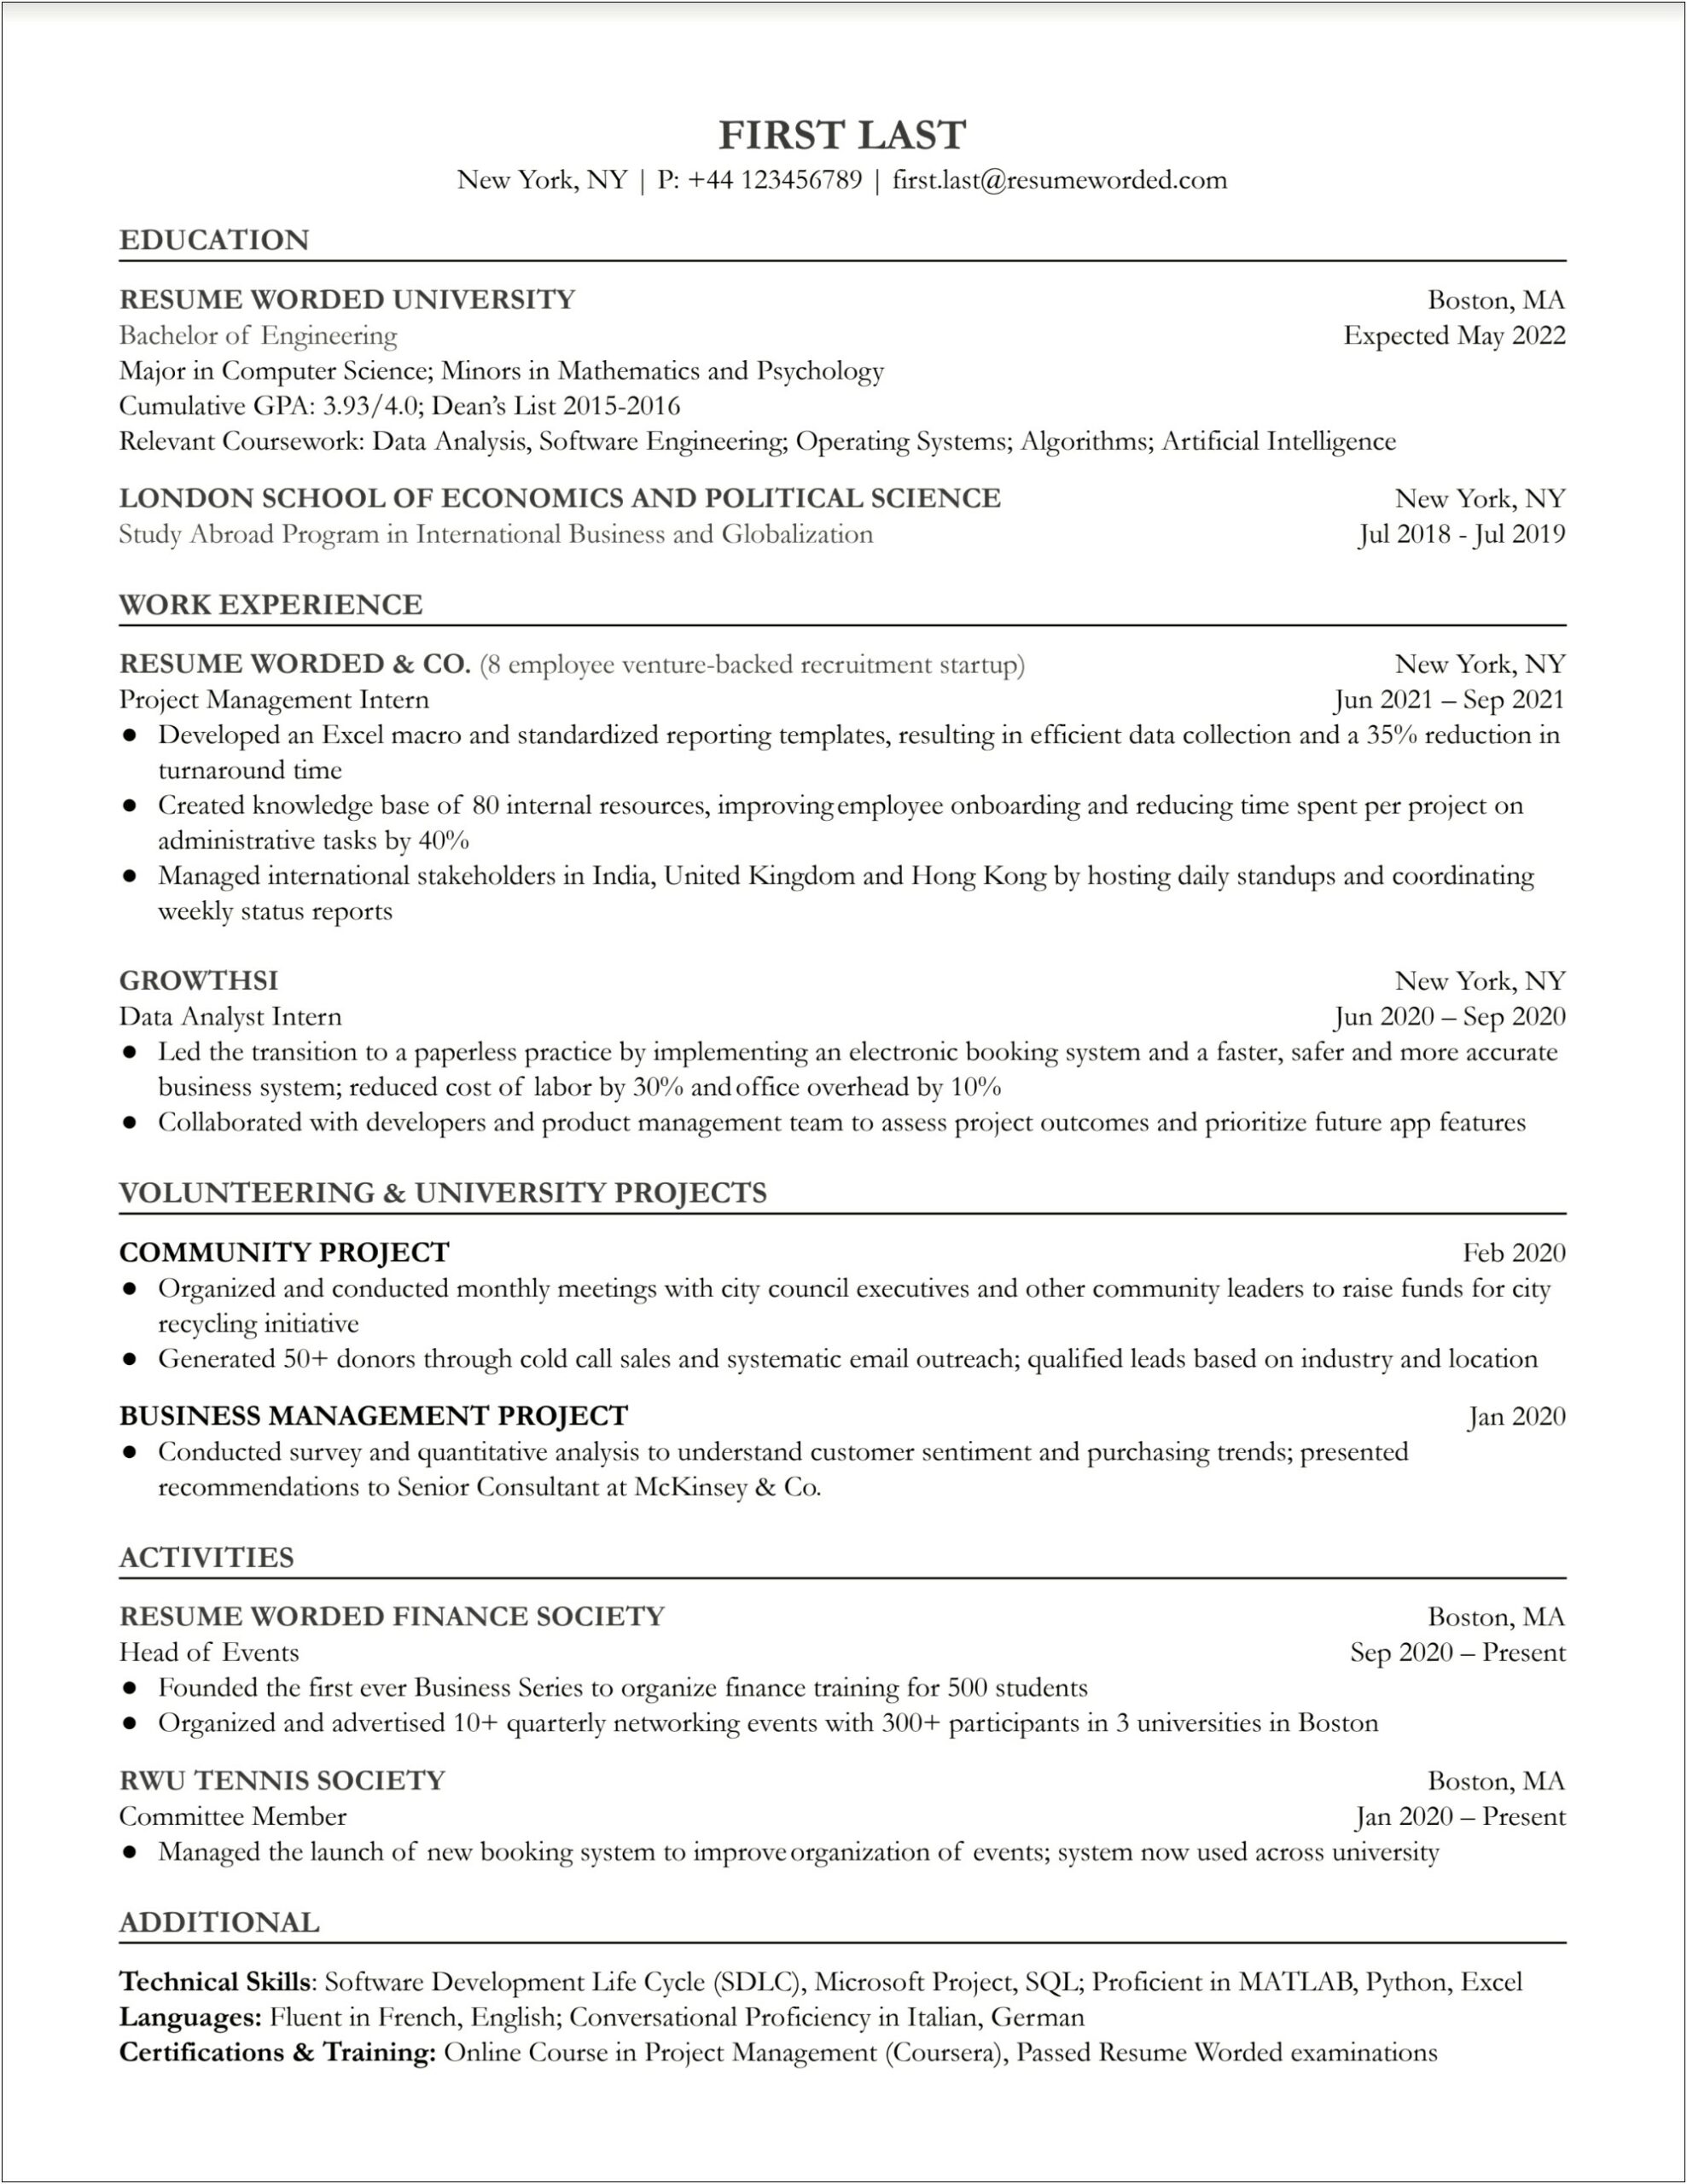 Sample Resume Includes Leadership Skills